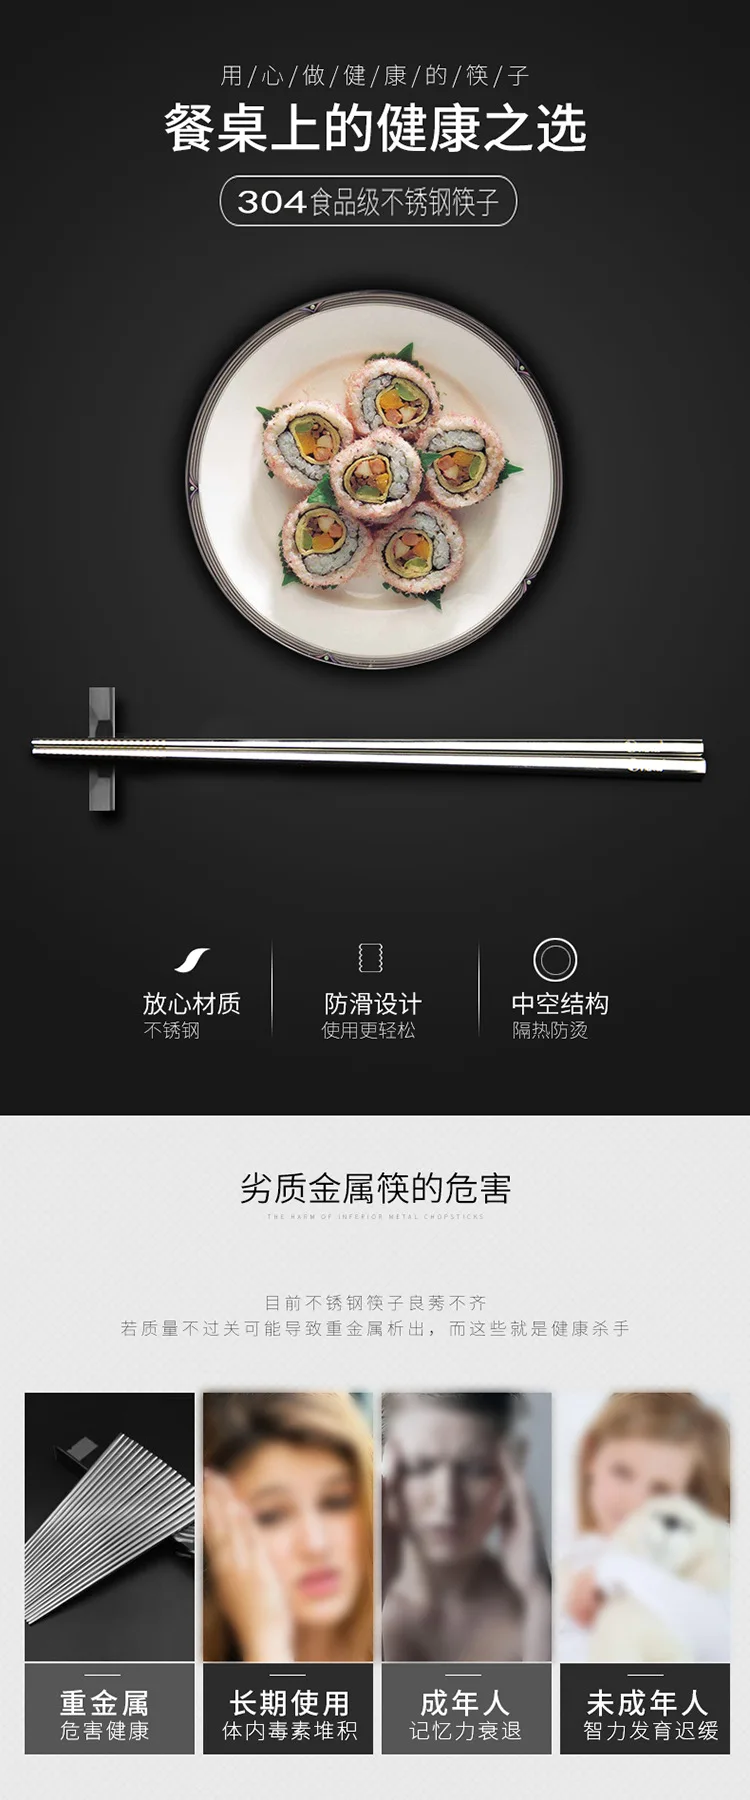 304 палочки для еды из нержавеющей стали Высший сорт отель палочки для еды японская посуда набор палочки для еды